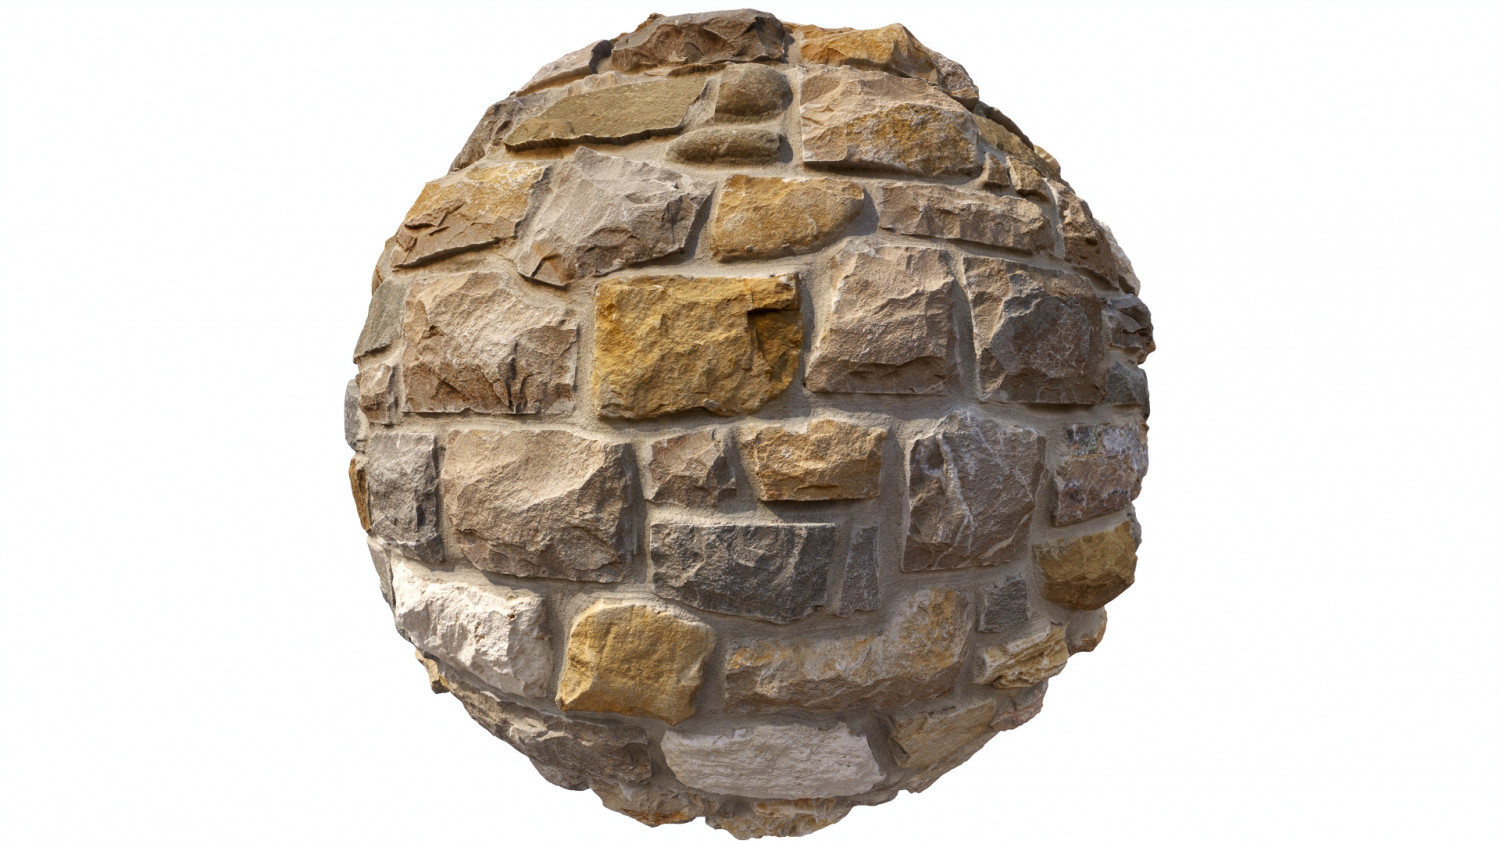 Italian stone wall texture